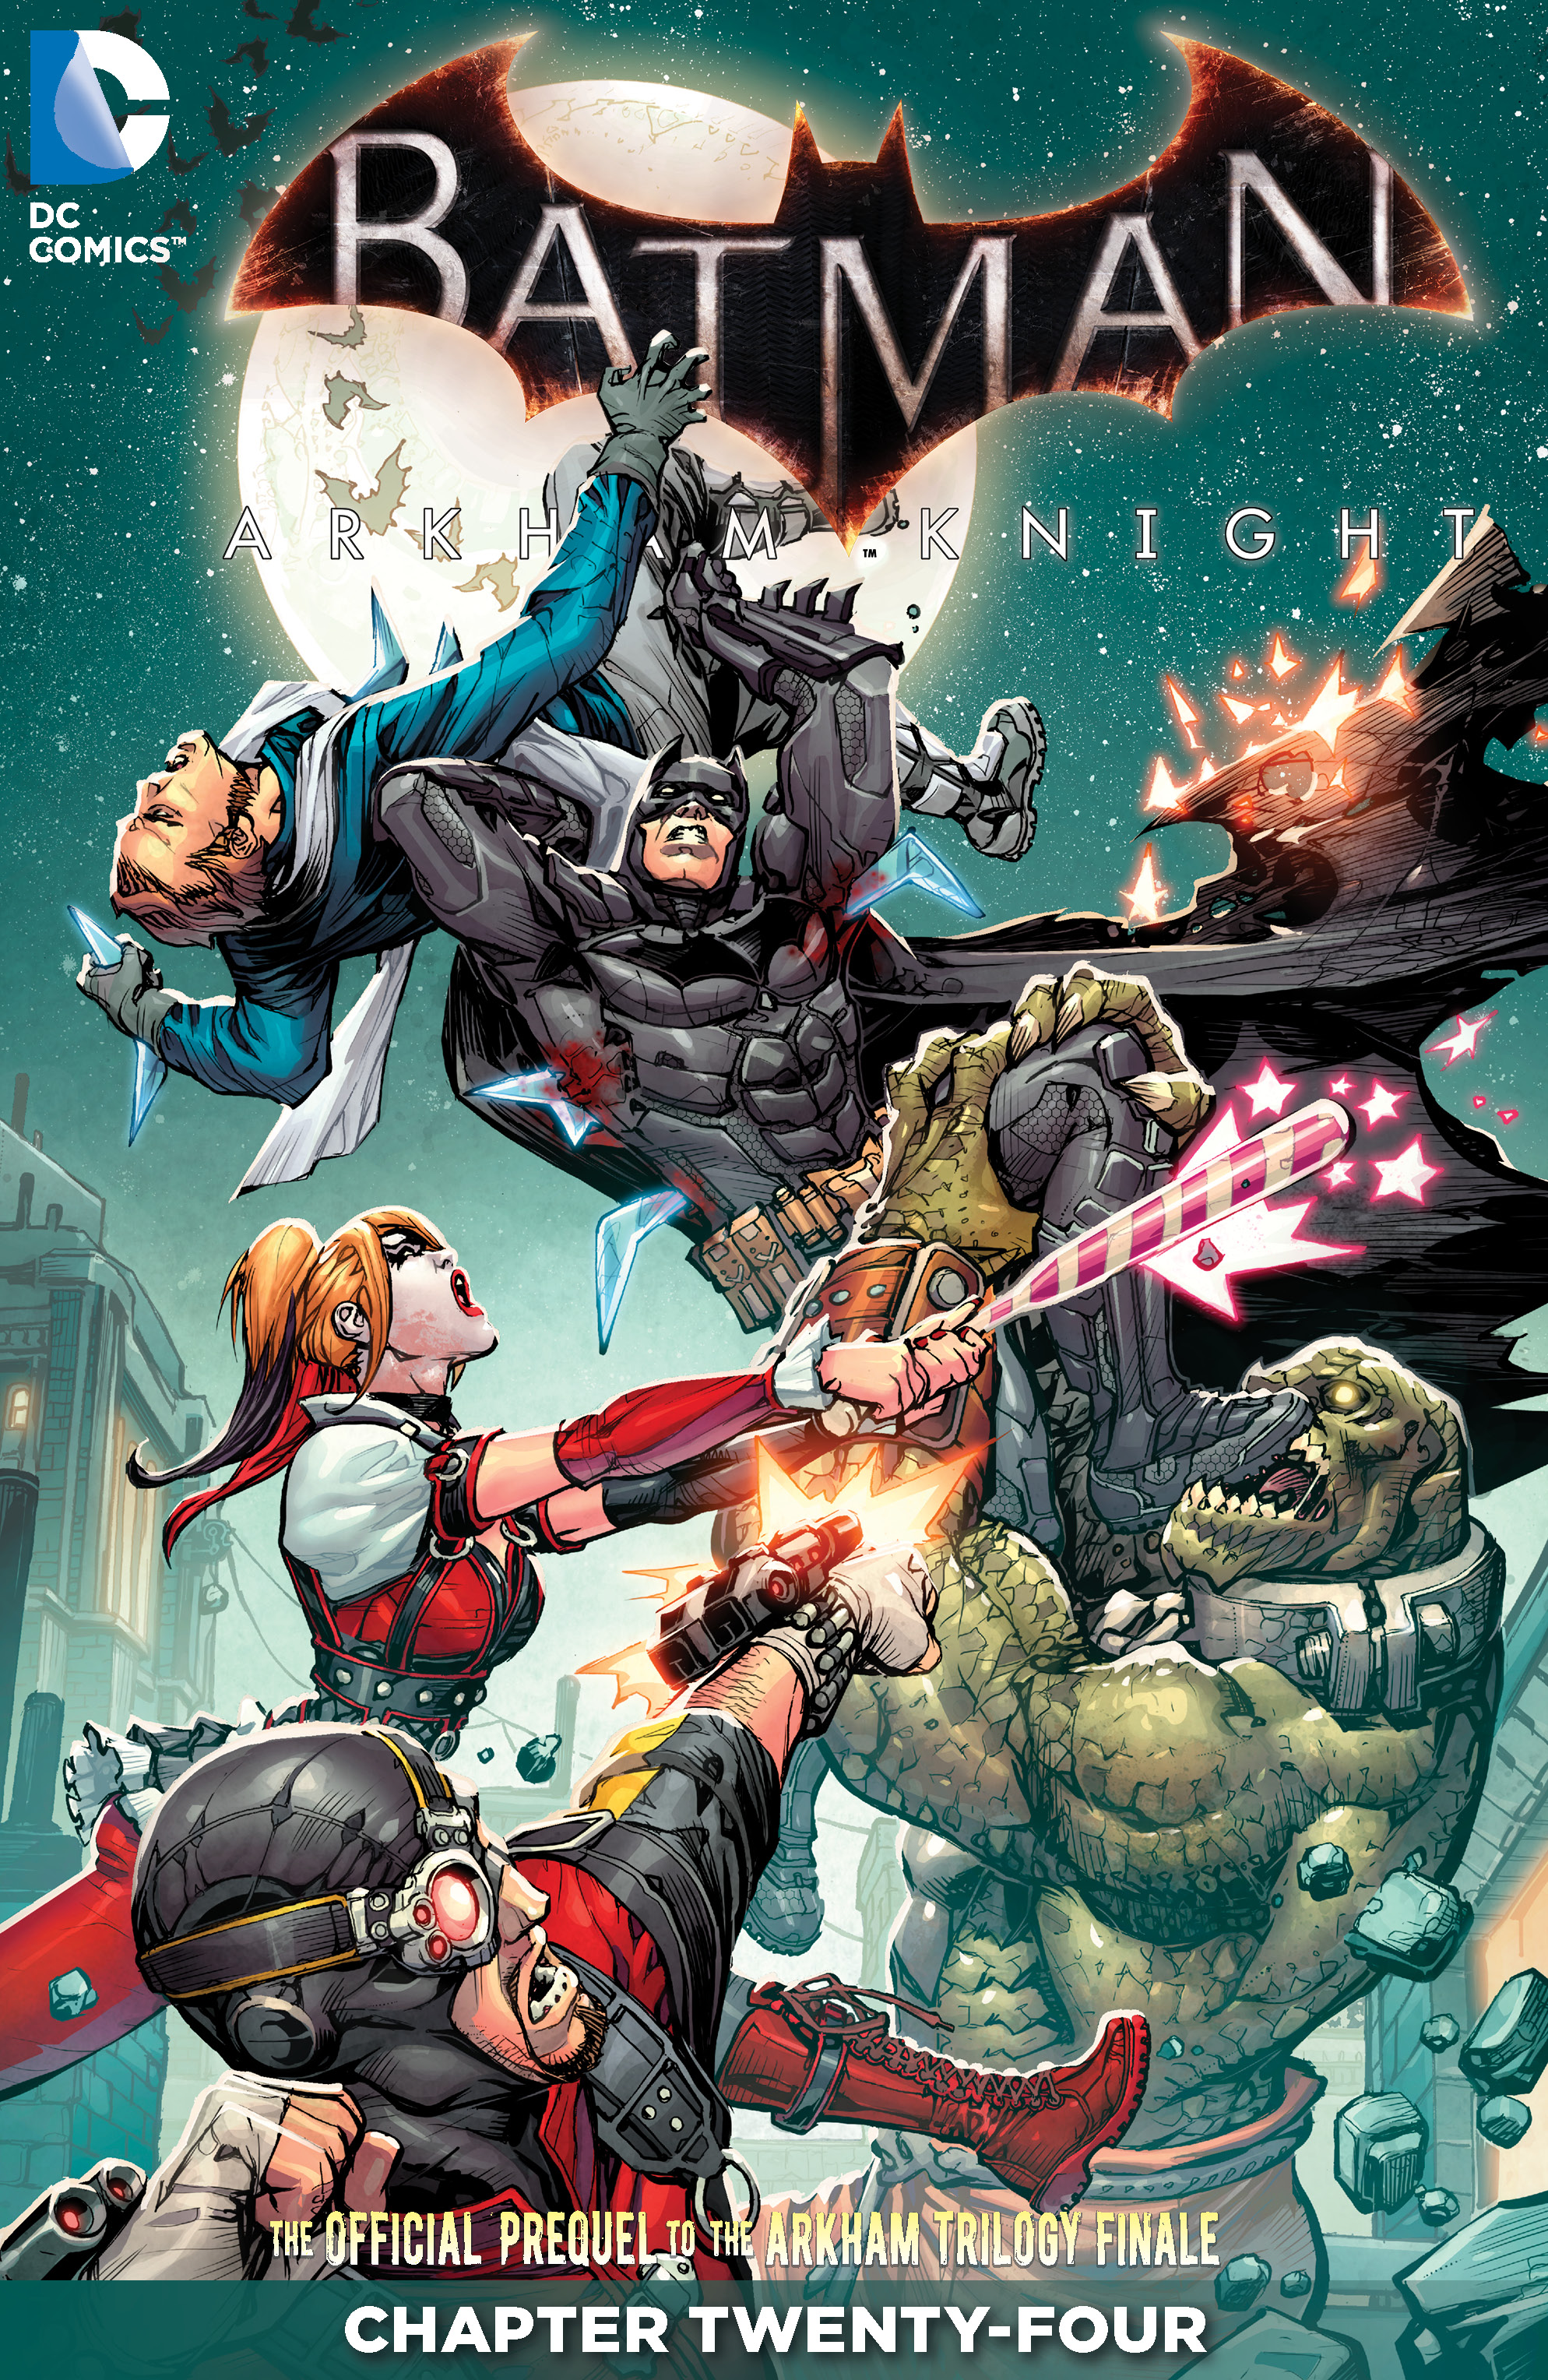 Batman: Arkham Knight #24 preview images